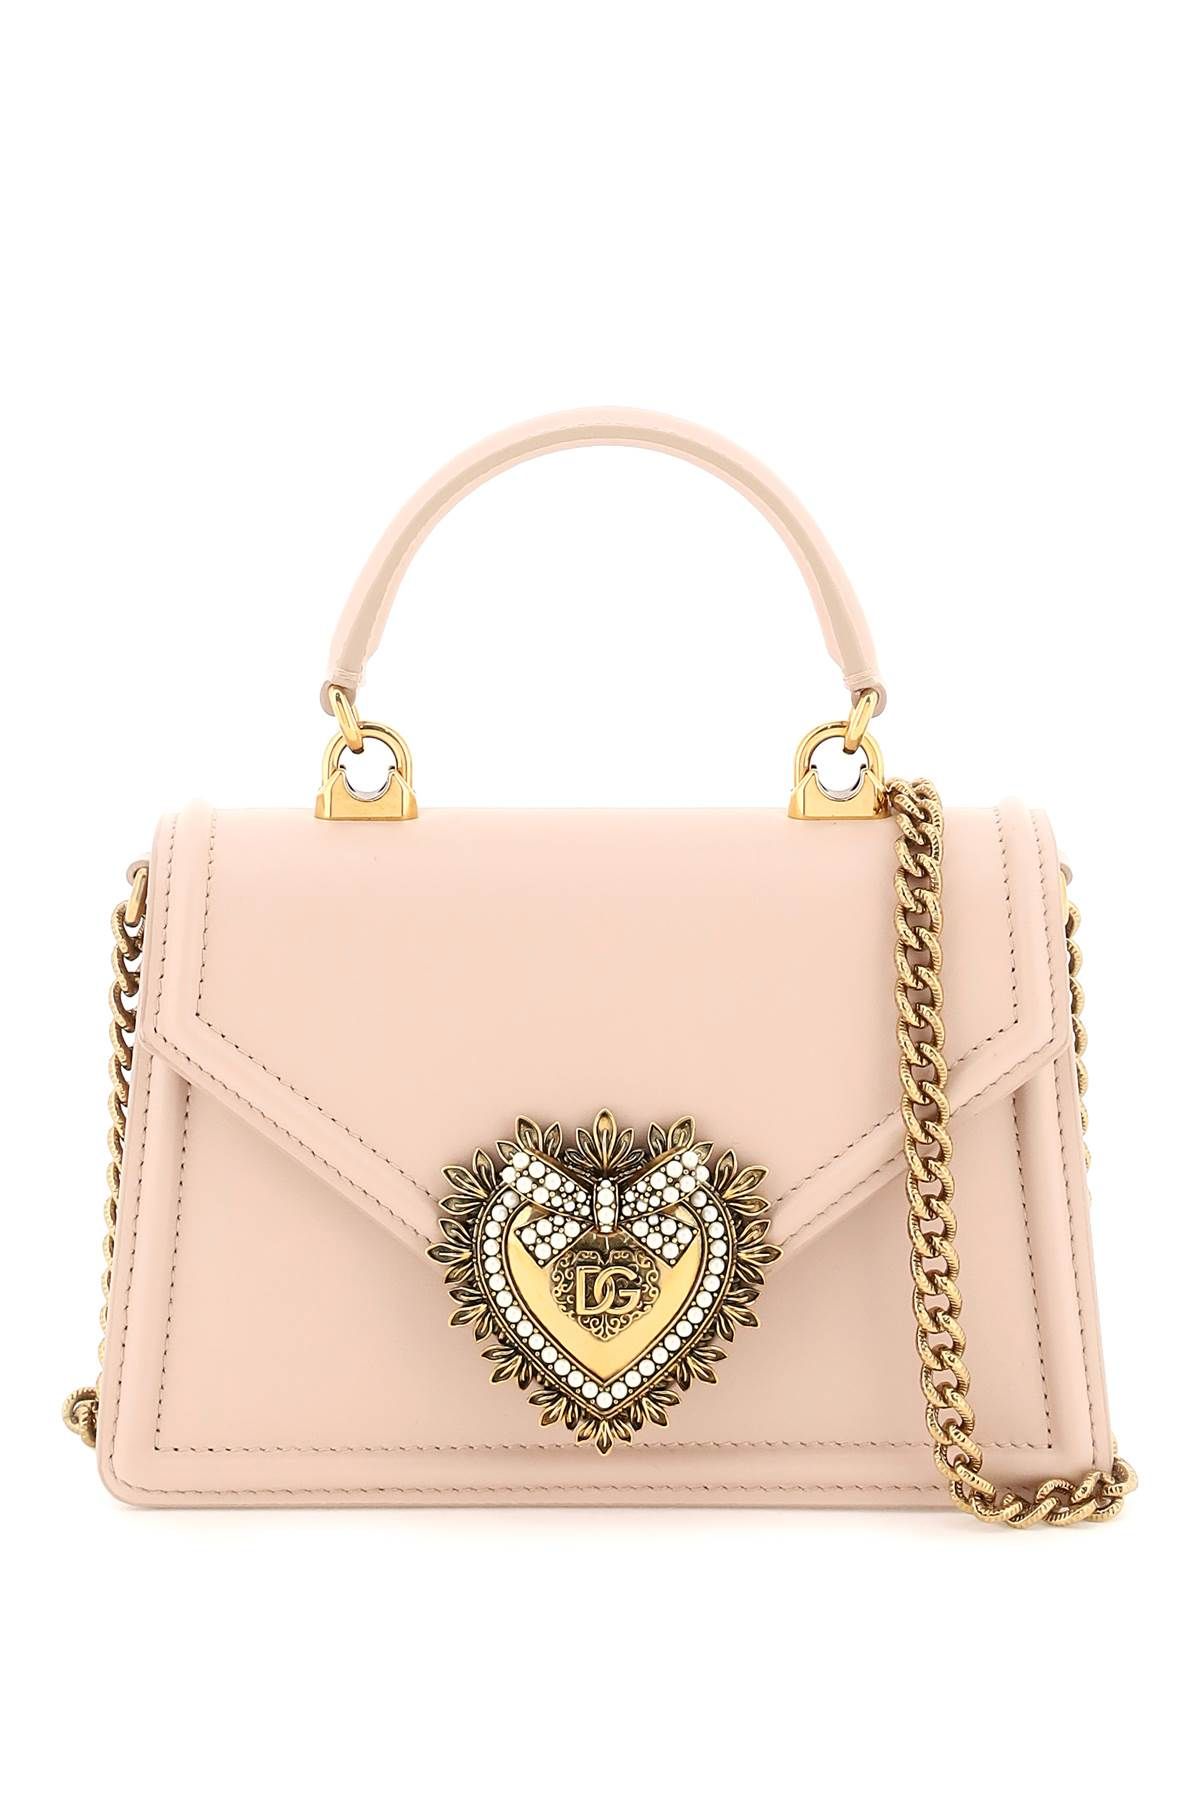 Dolce & Gabbana DOLCE & GABBANA devotion small handbag